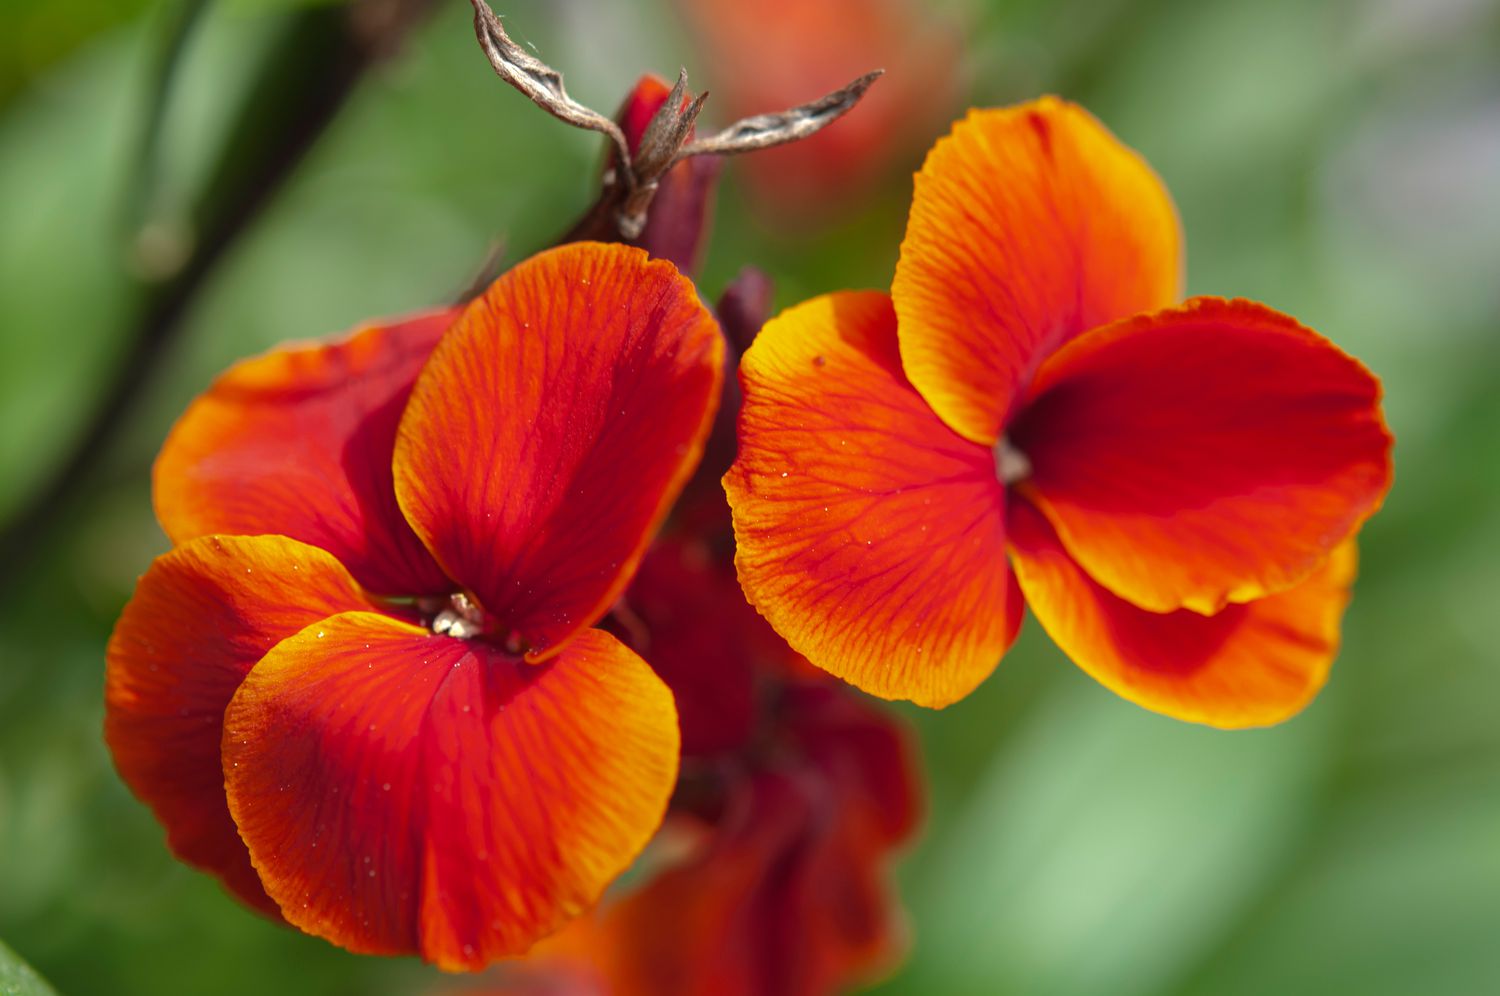 Feuerkönigspflanze mit rot-orangen Blüten in Nahaufnahme